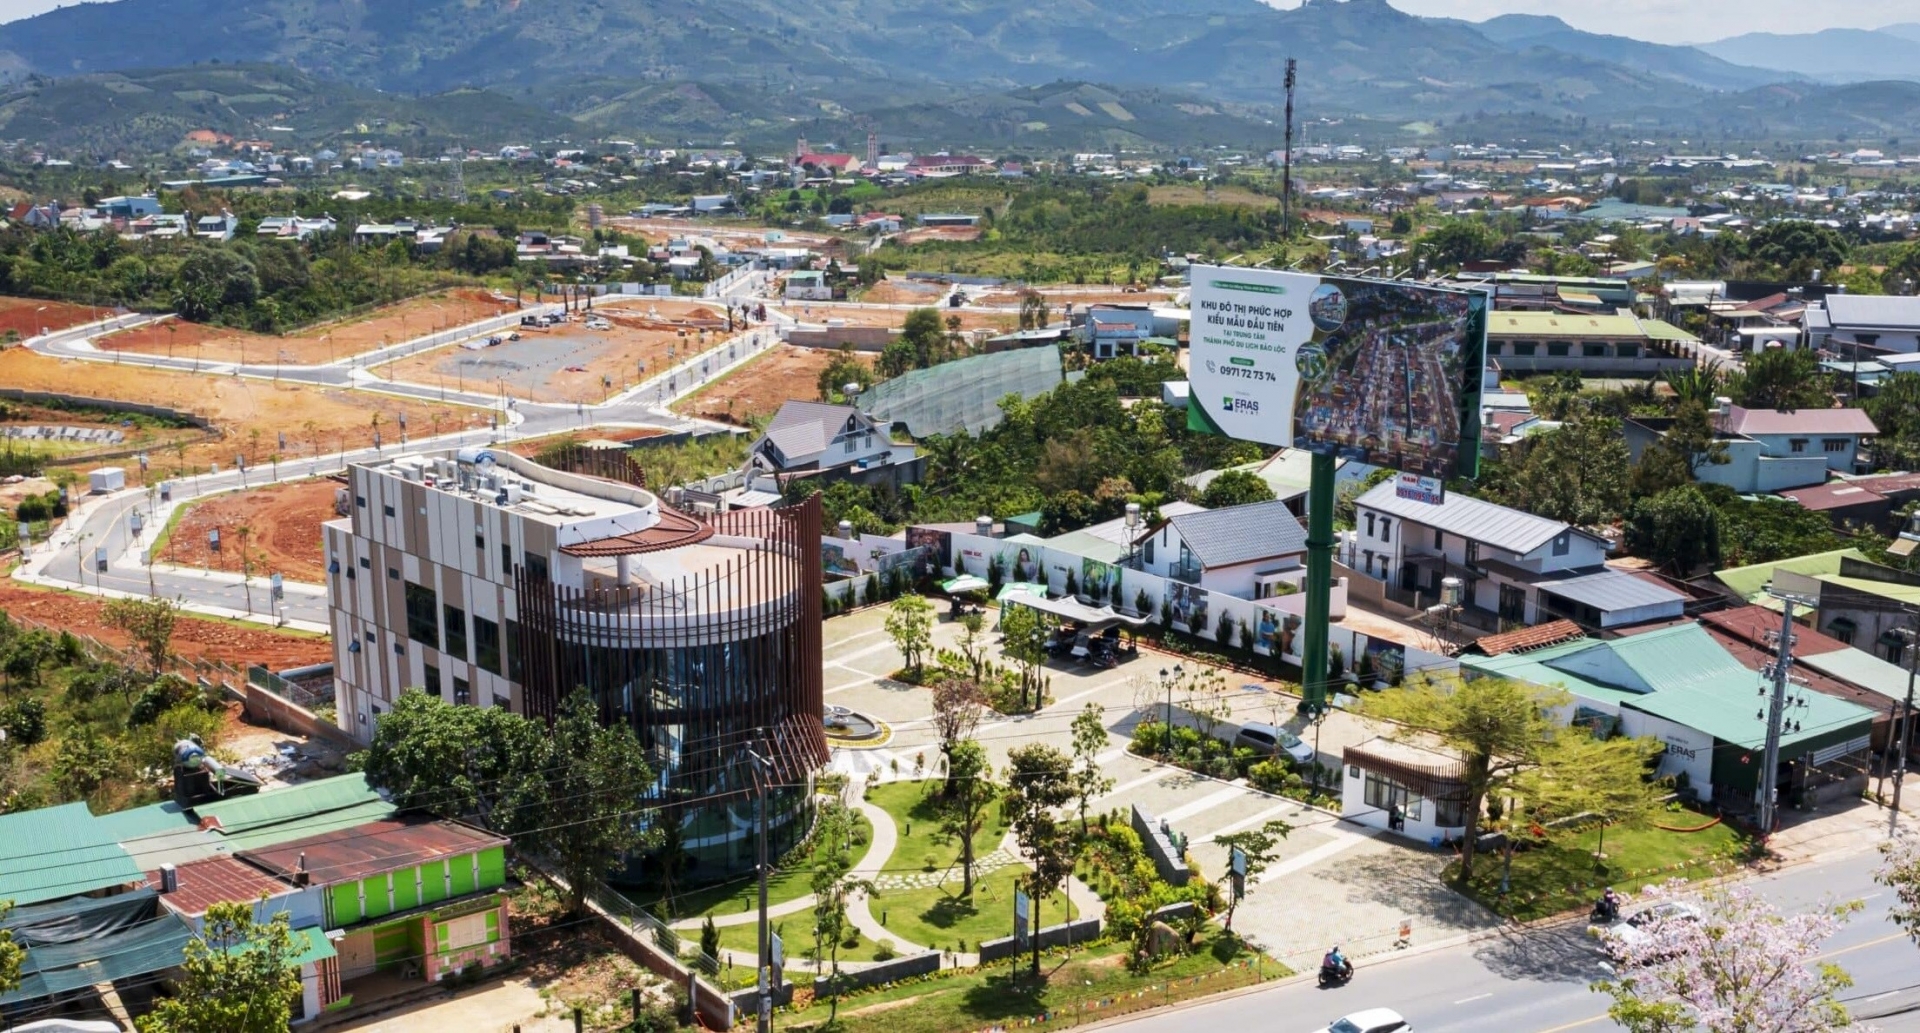 Dự án Khu dân cư nông thôn mới thành phố xanh tại xã Lộc Châu do Công ty CP Đầu tư Eras Đà Lạt làm chủ đầu tư được UBND tỉnh Lâm Đồng